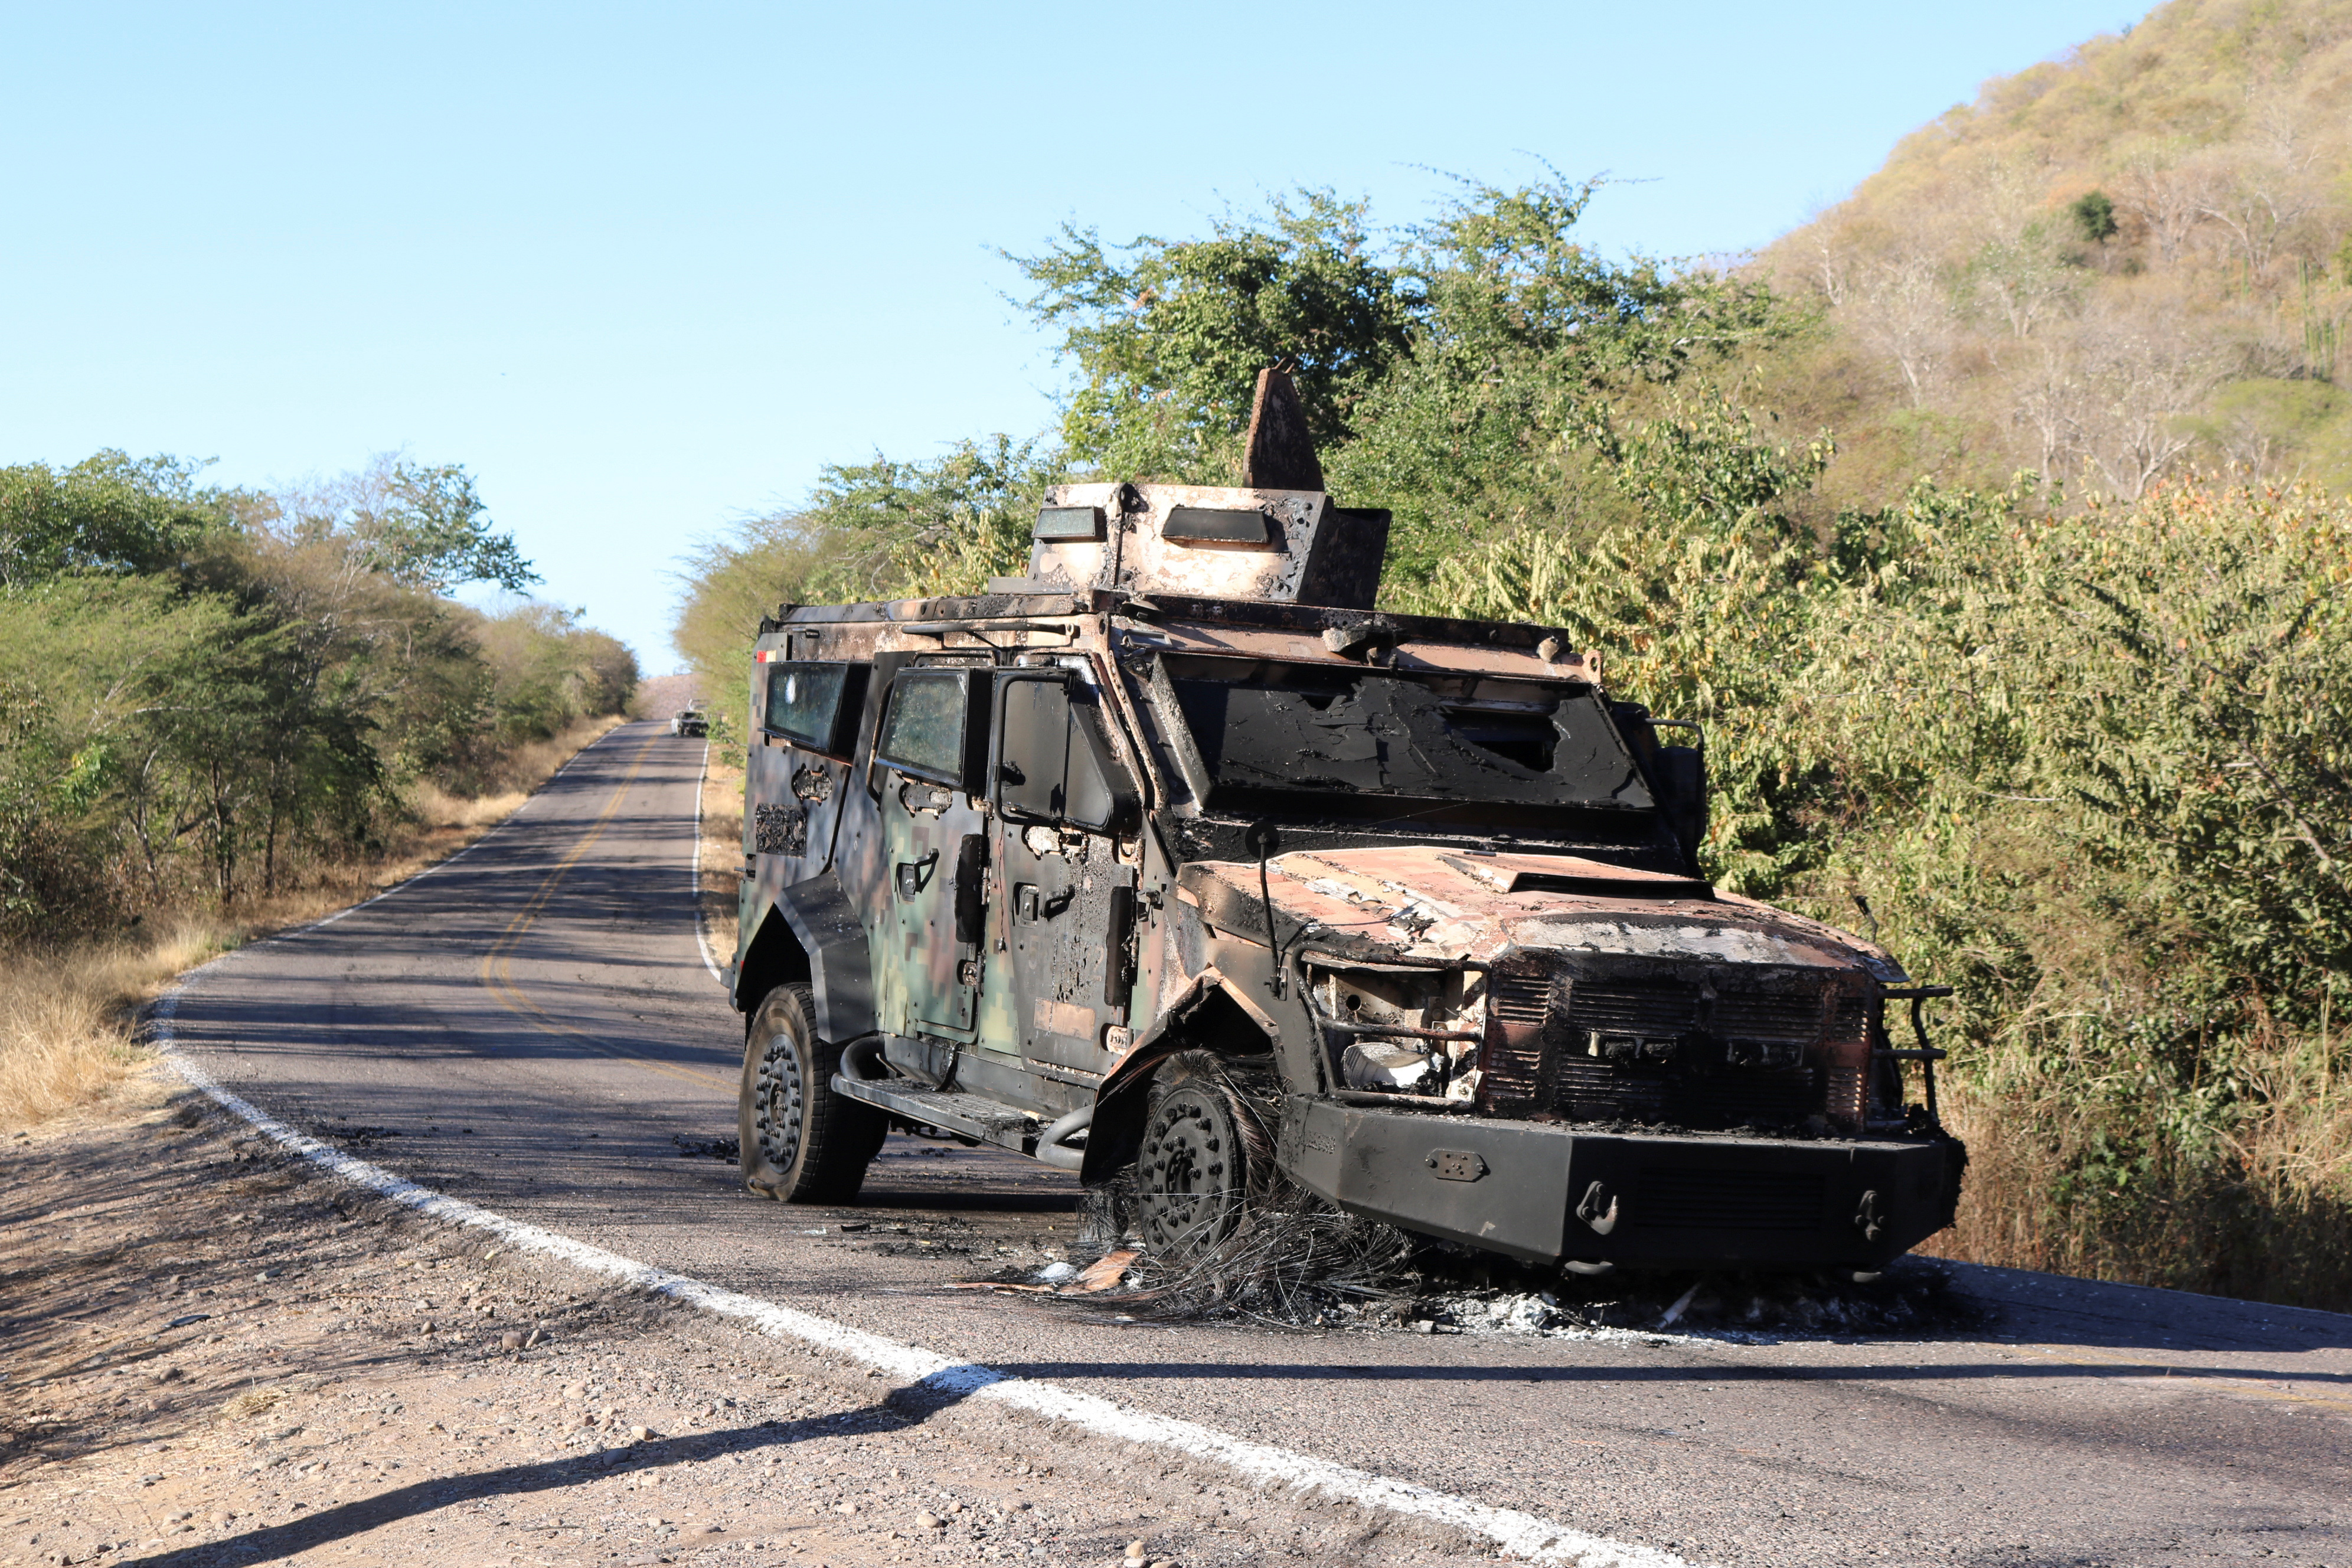 Culicán vivió un jueves negro luego de uno de los líderes del Cartél de Sinaloa fuera recapturado la mañana del 05 de enero.  (Foto: REUTERS/Stringer)